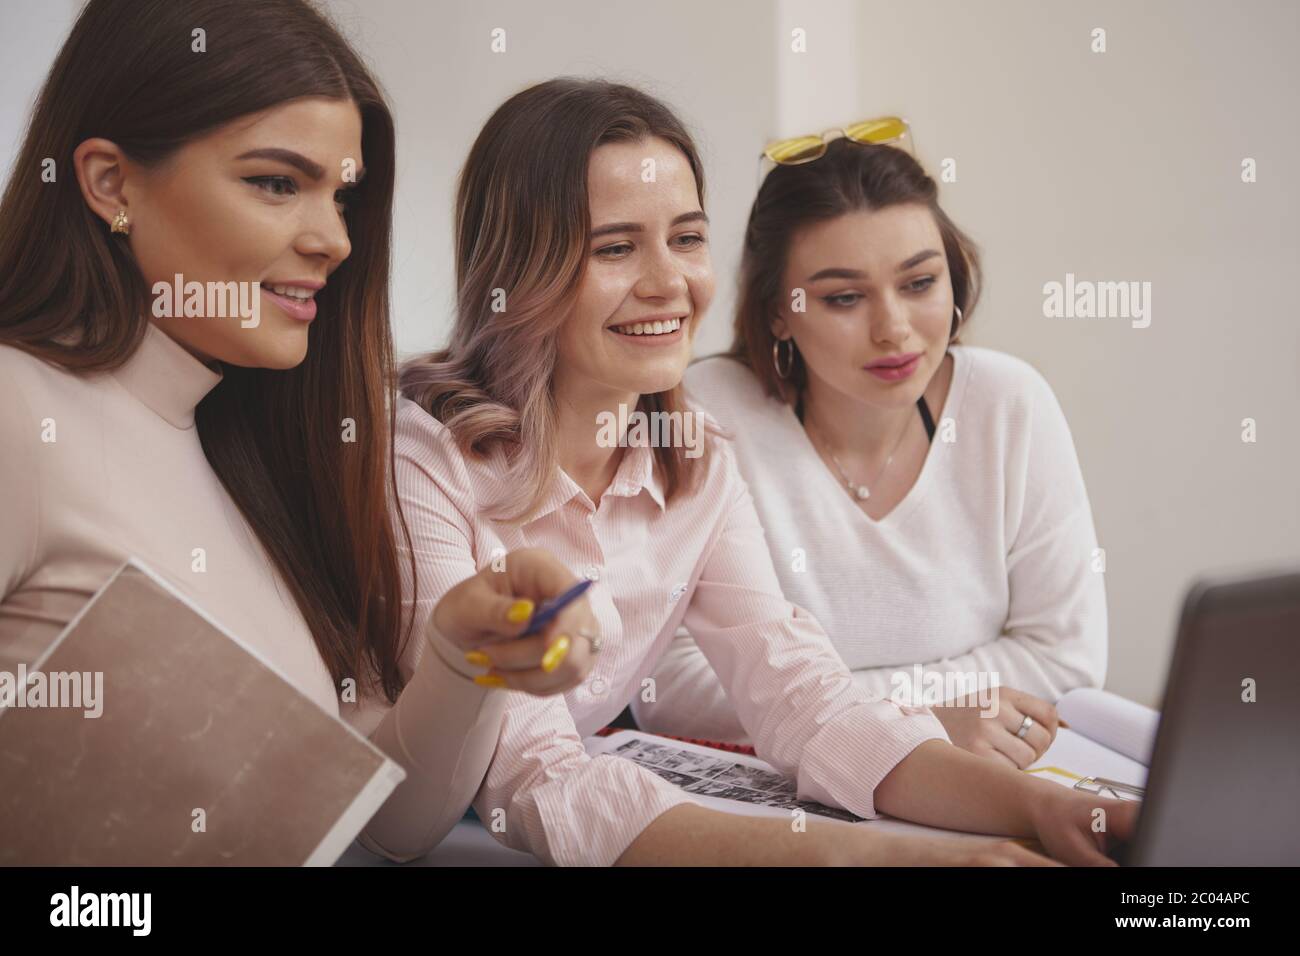 Frauen, Erfolg Konzept. Workin Gruppe junge schöne Frauen zusammen studieren an der Hochschule Bibliothek, Surfen online auf Laptop. charmante weibliche Studierende Stockfoto